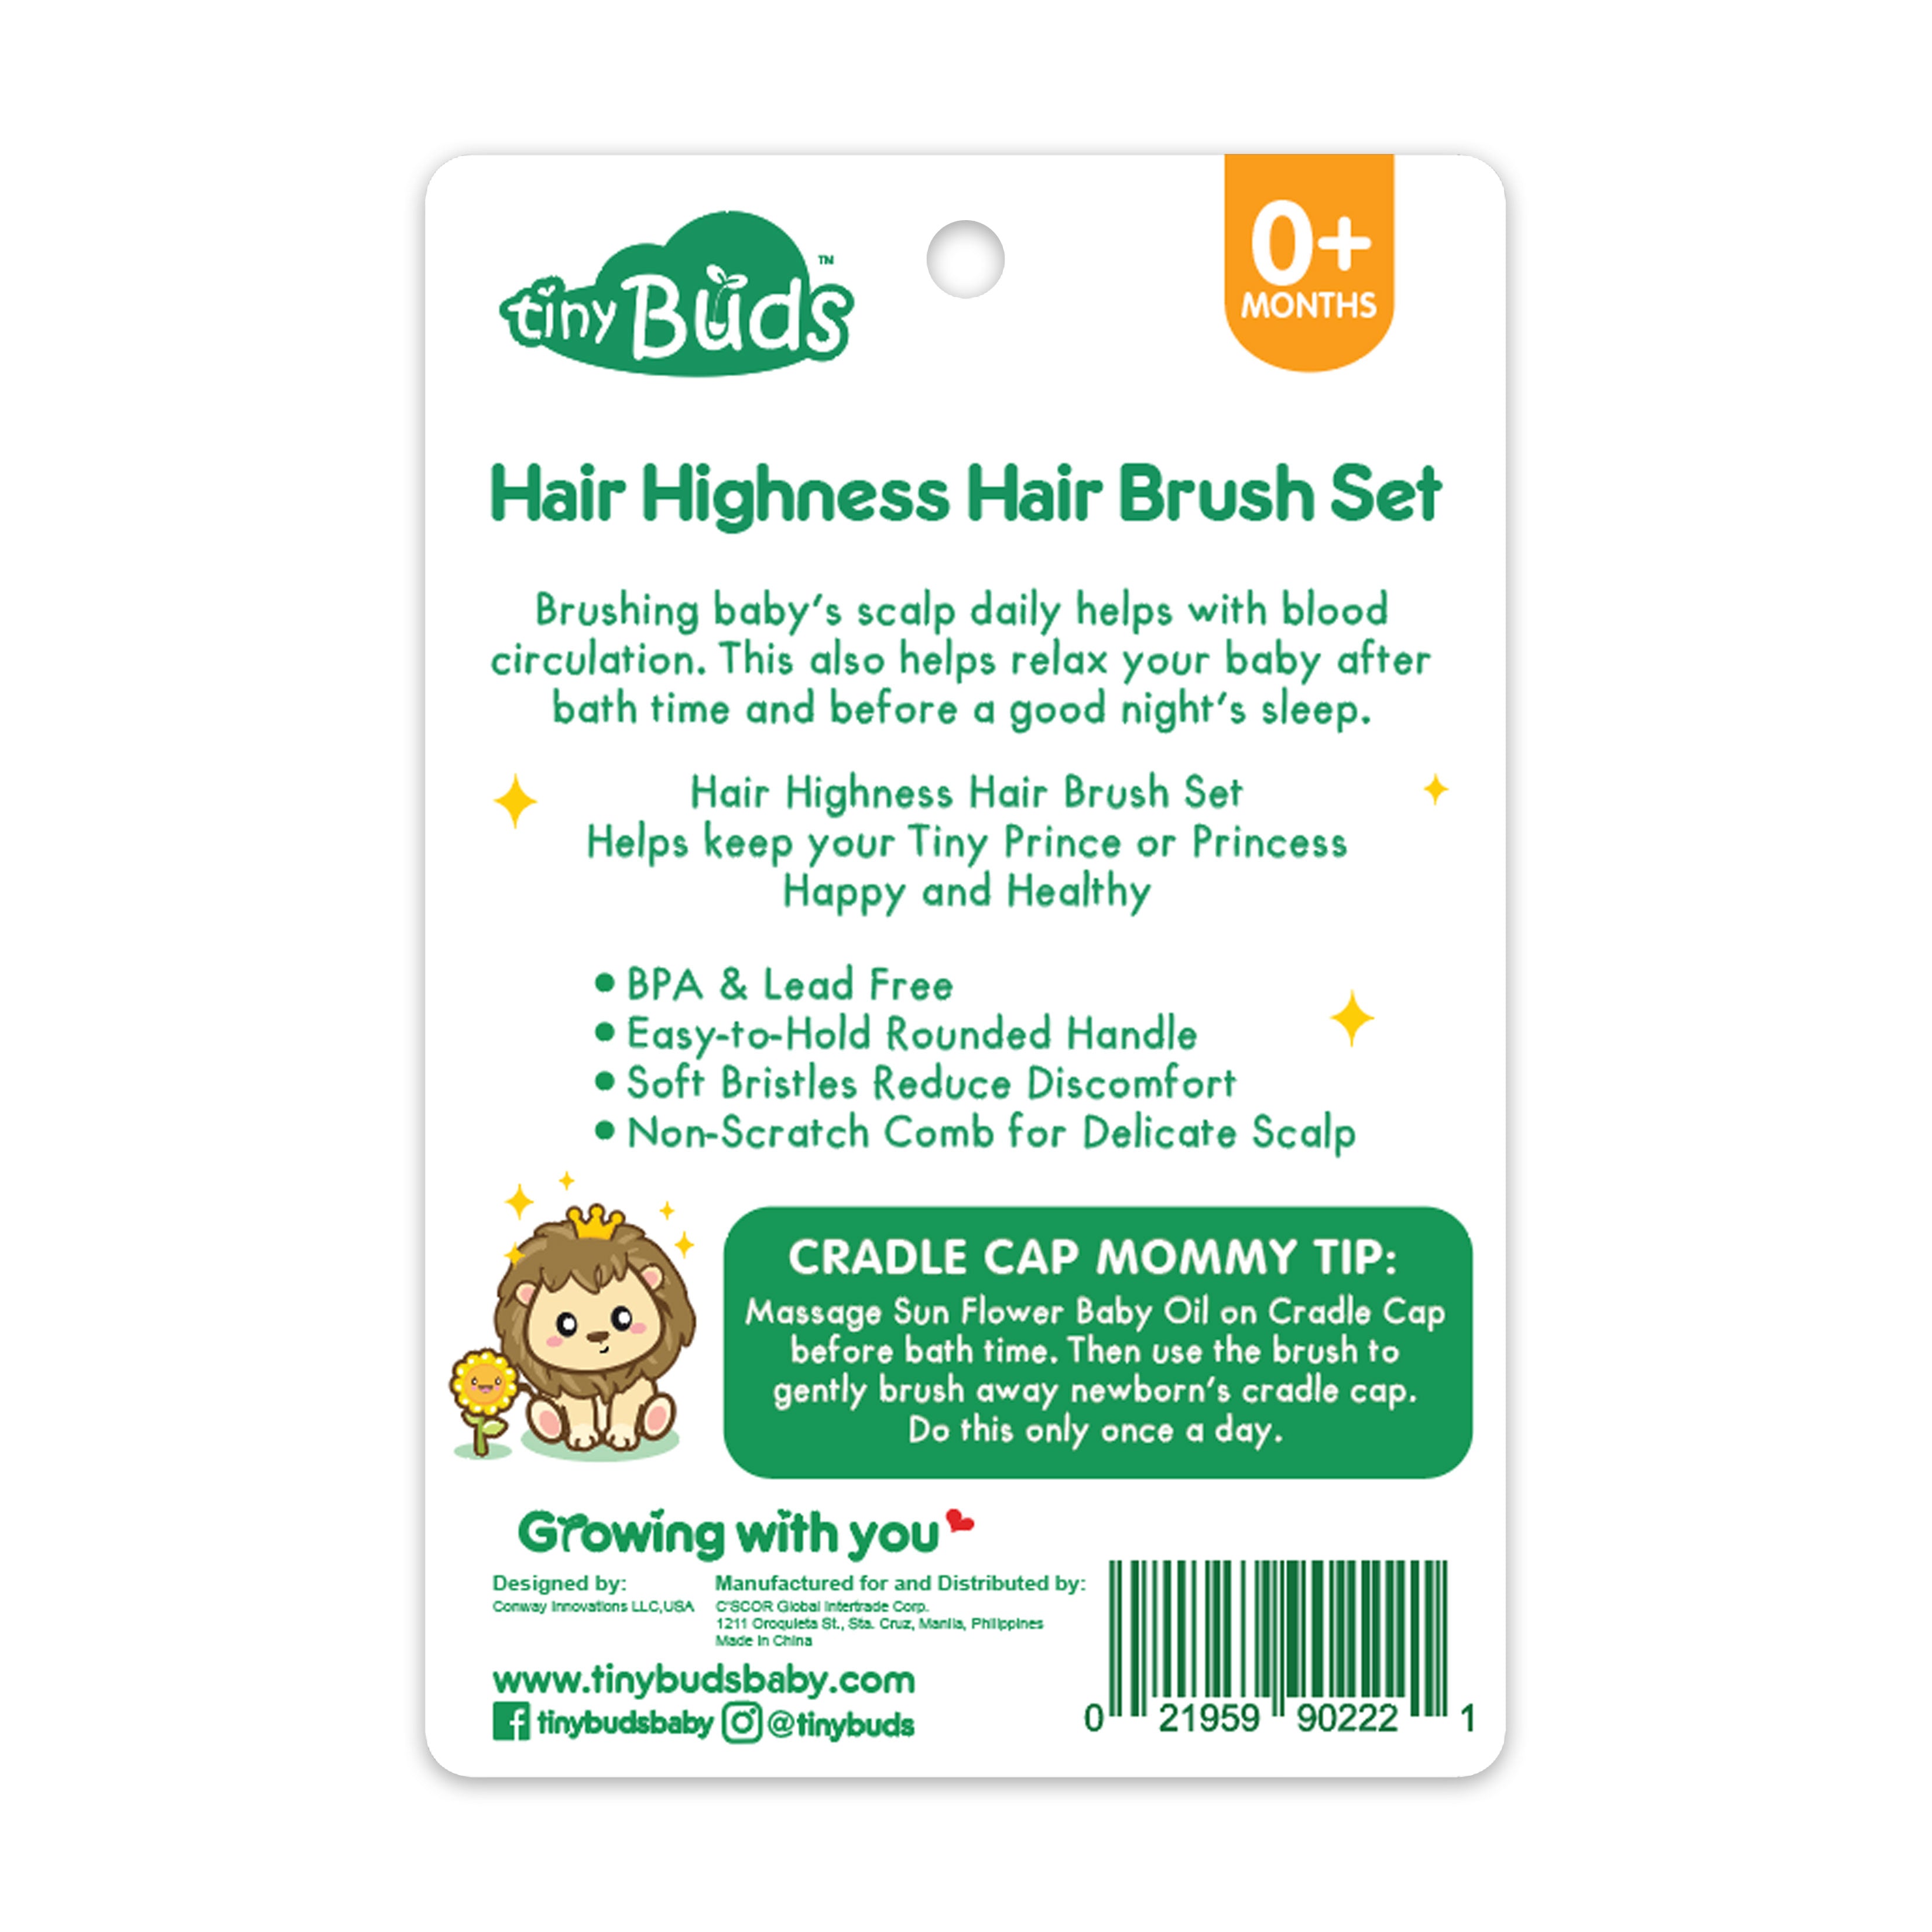 Hair Highness Hair Brush Set